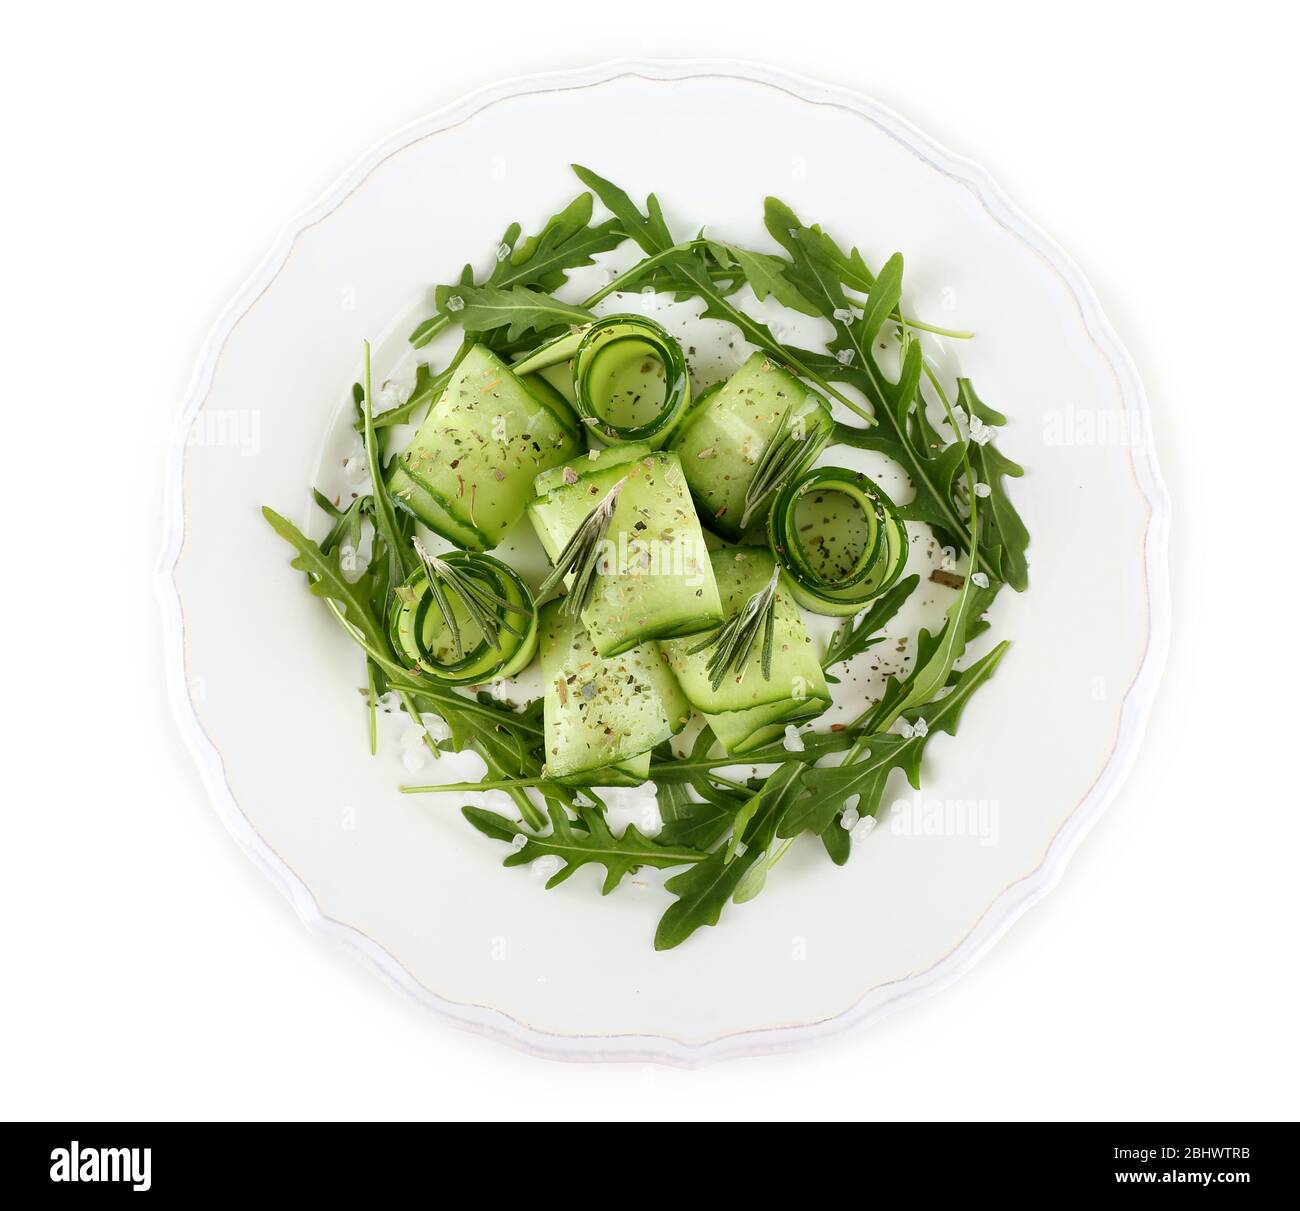 Teller mit grünem Salat mit Gurke, Rucola und Rosmarin auf weiß isoliert Stockfoto